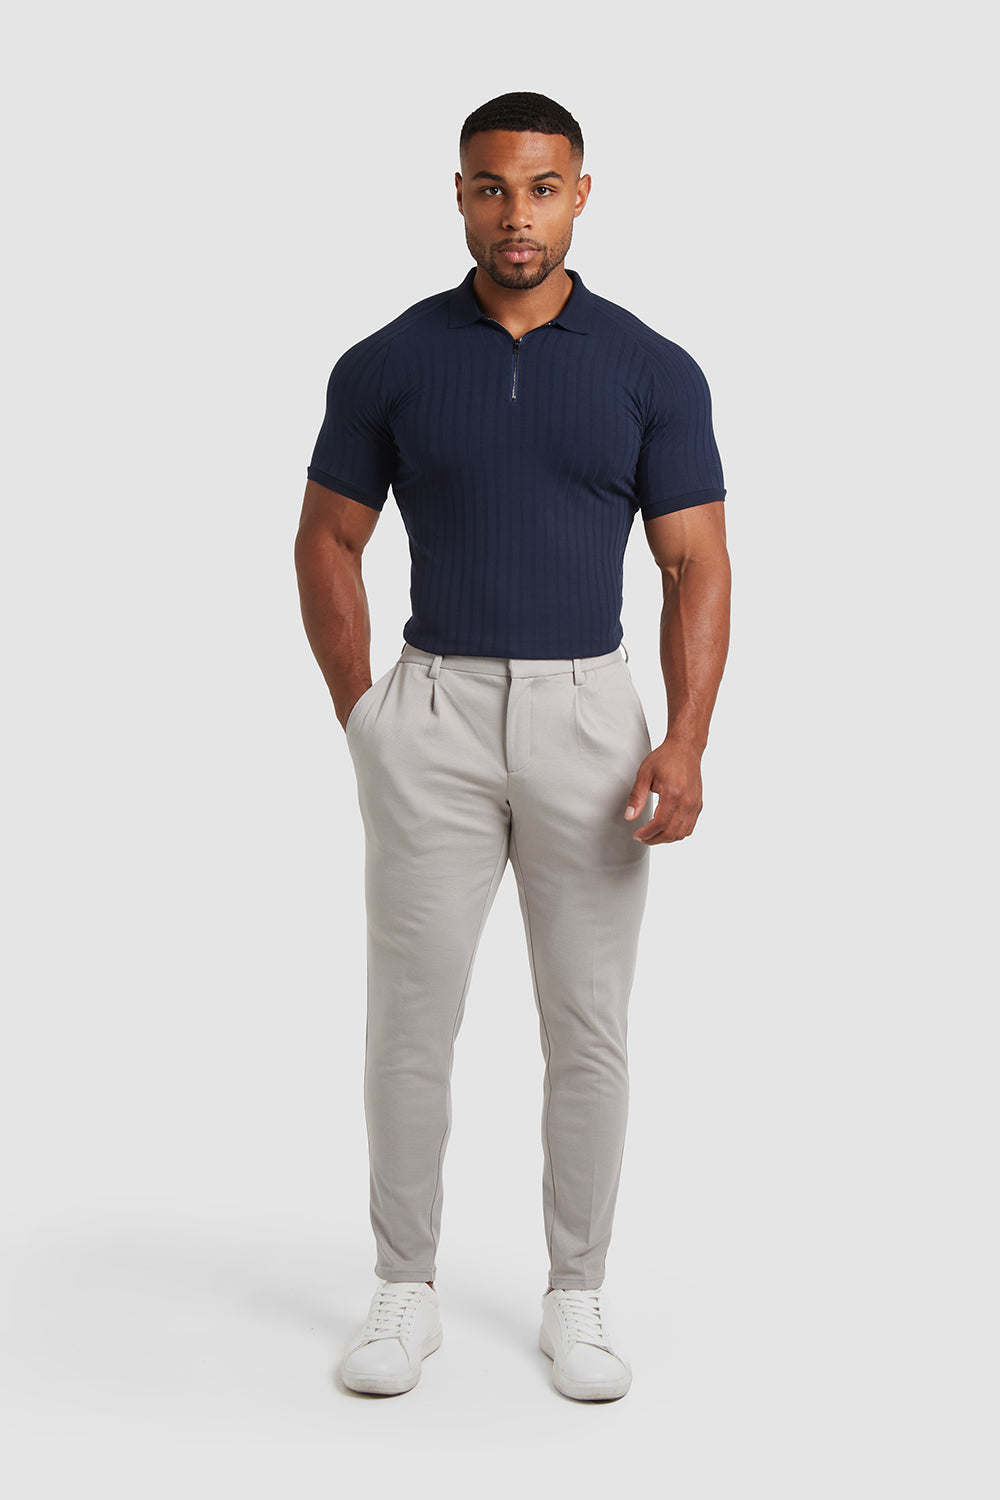 Buy Khaki Tshirts for Men by NETPLAY Online | Ajio.com